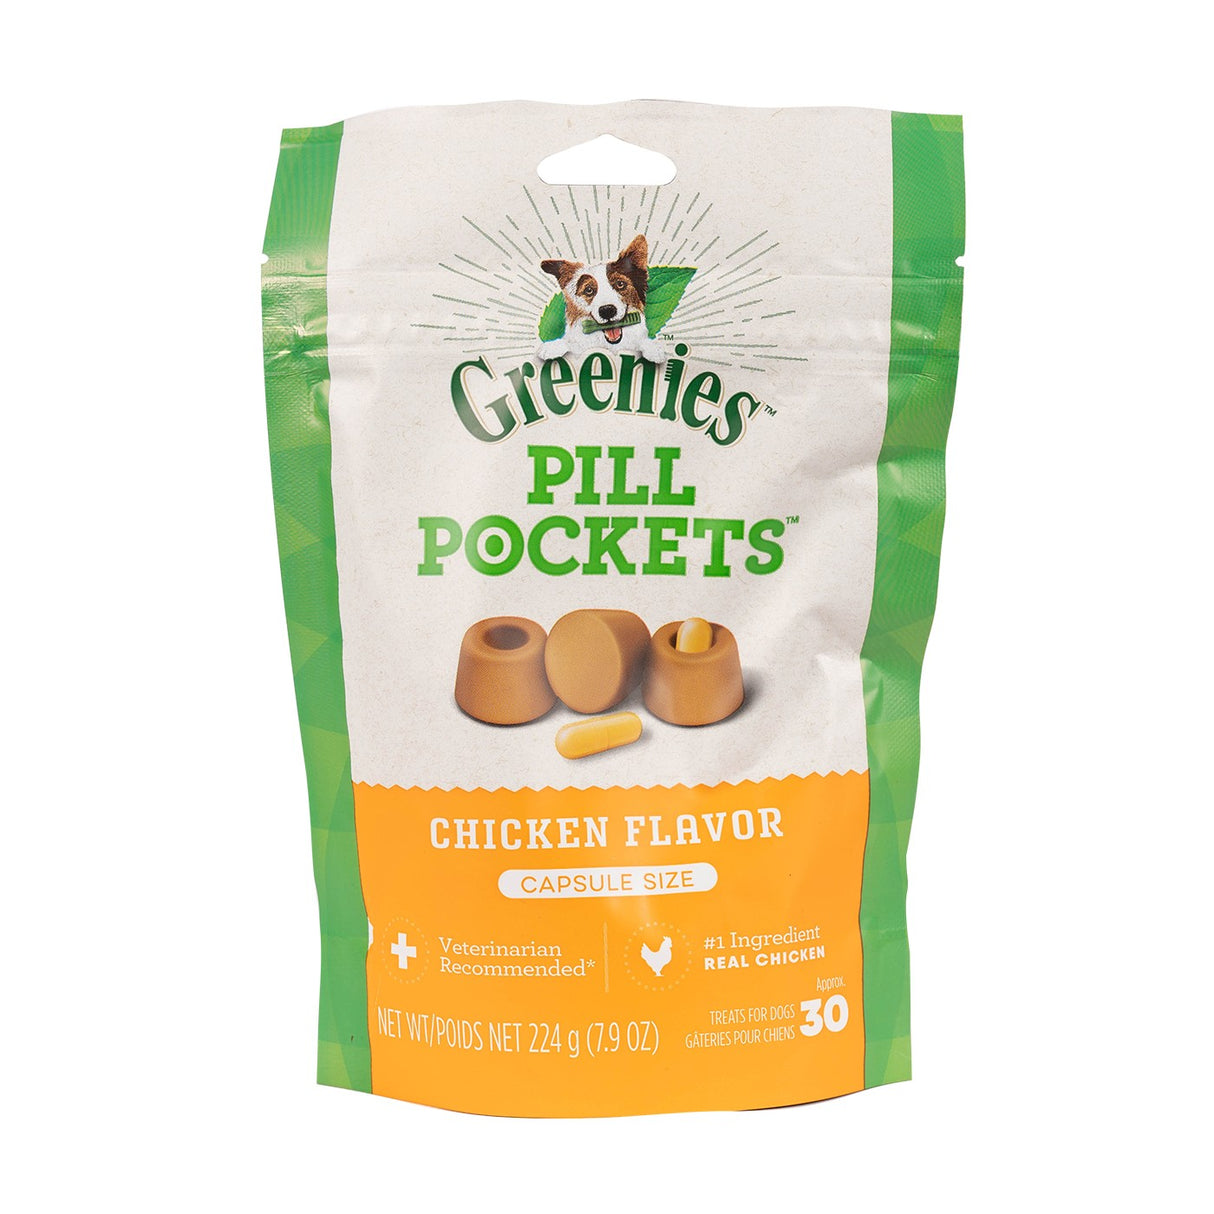 Greenies Pill Pockets Capsules pour chien au poulet 15,8 oz.